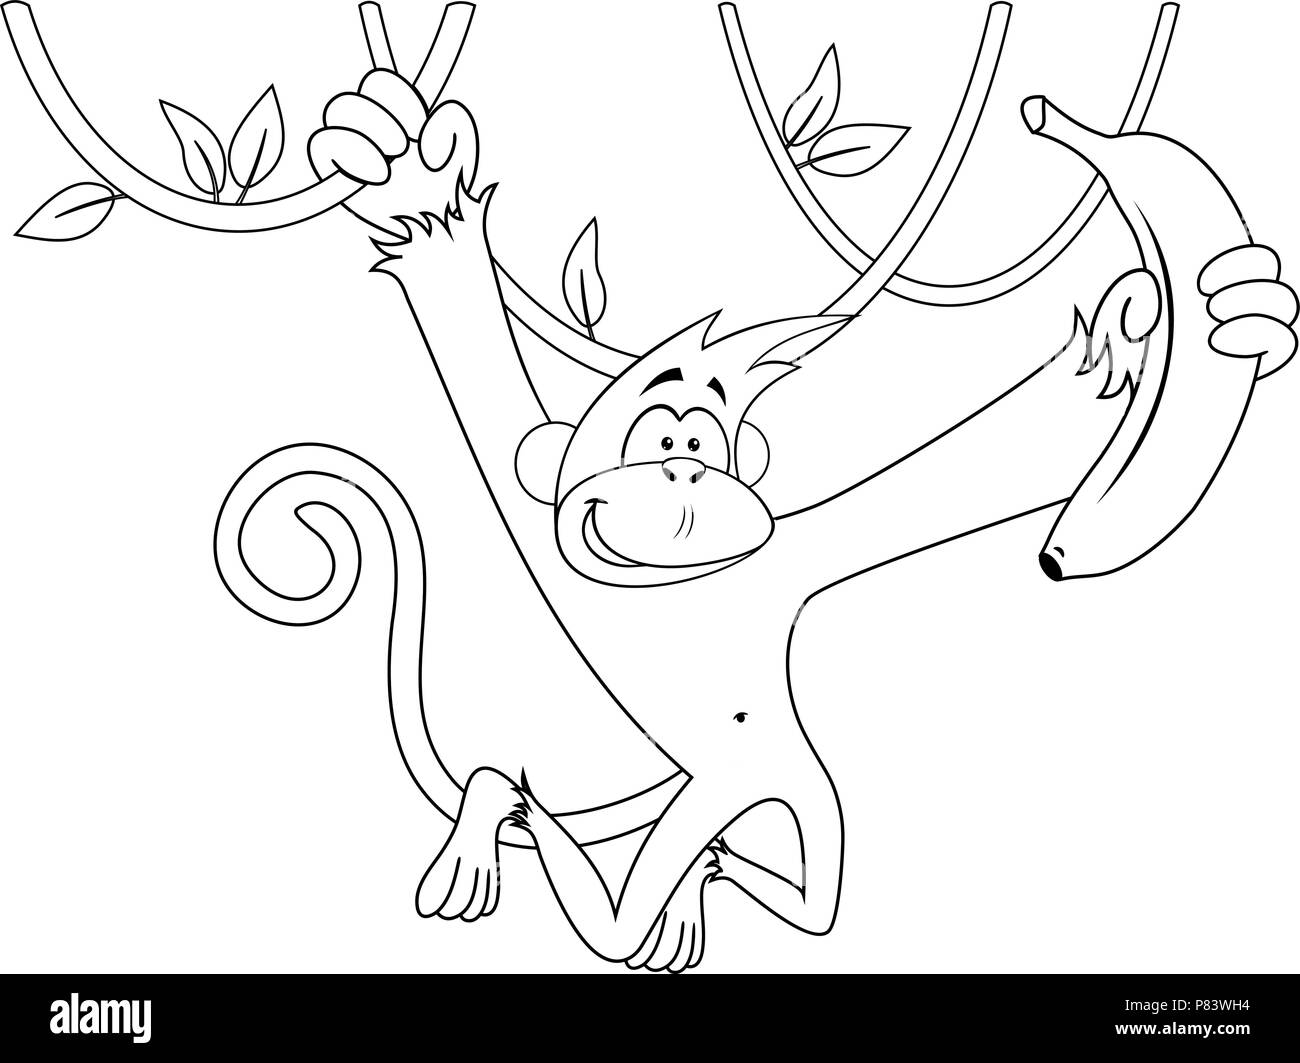 Cartoon happy monkey hanging and holding banana Stock Vector